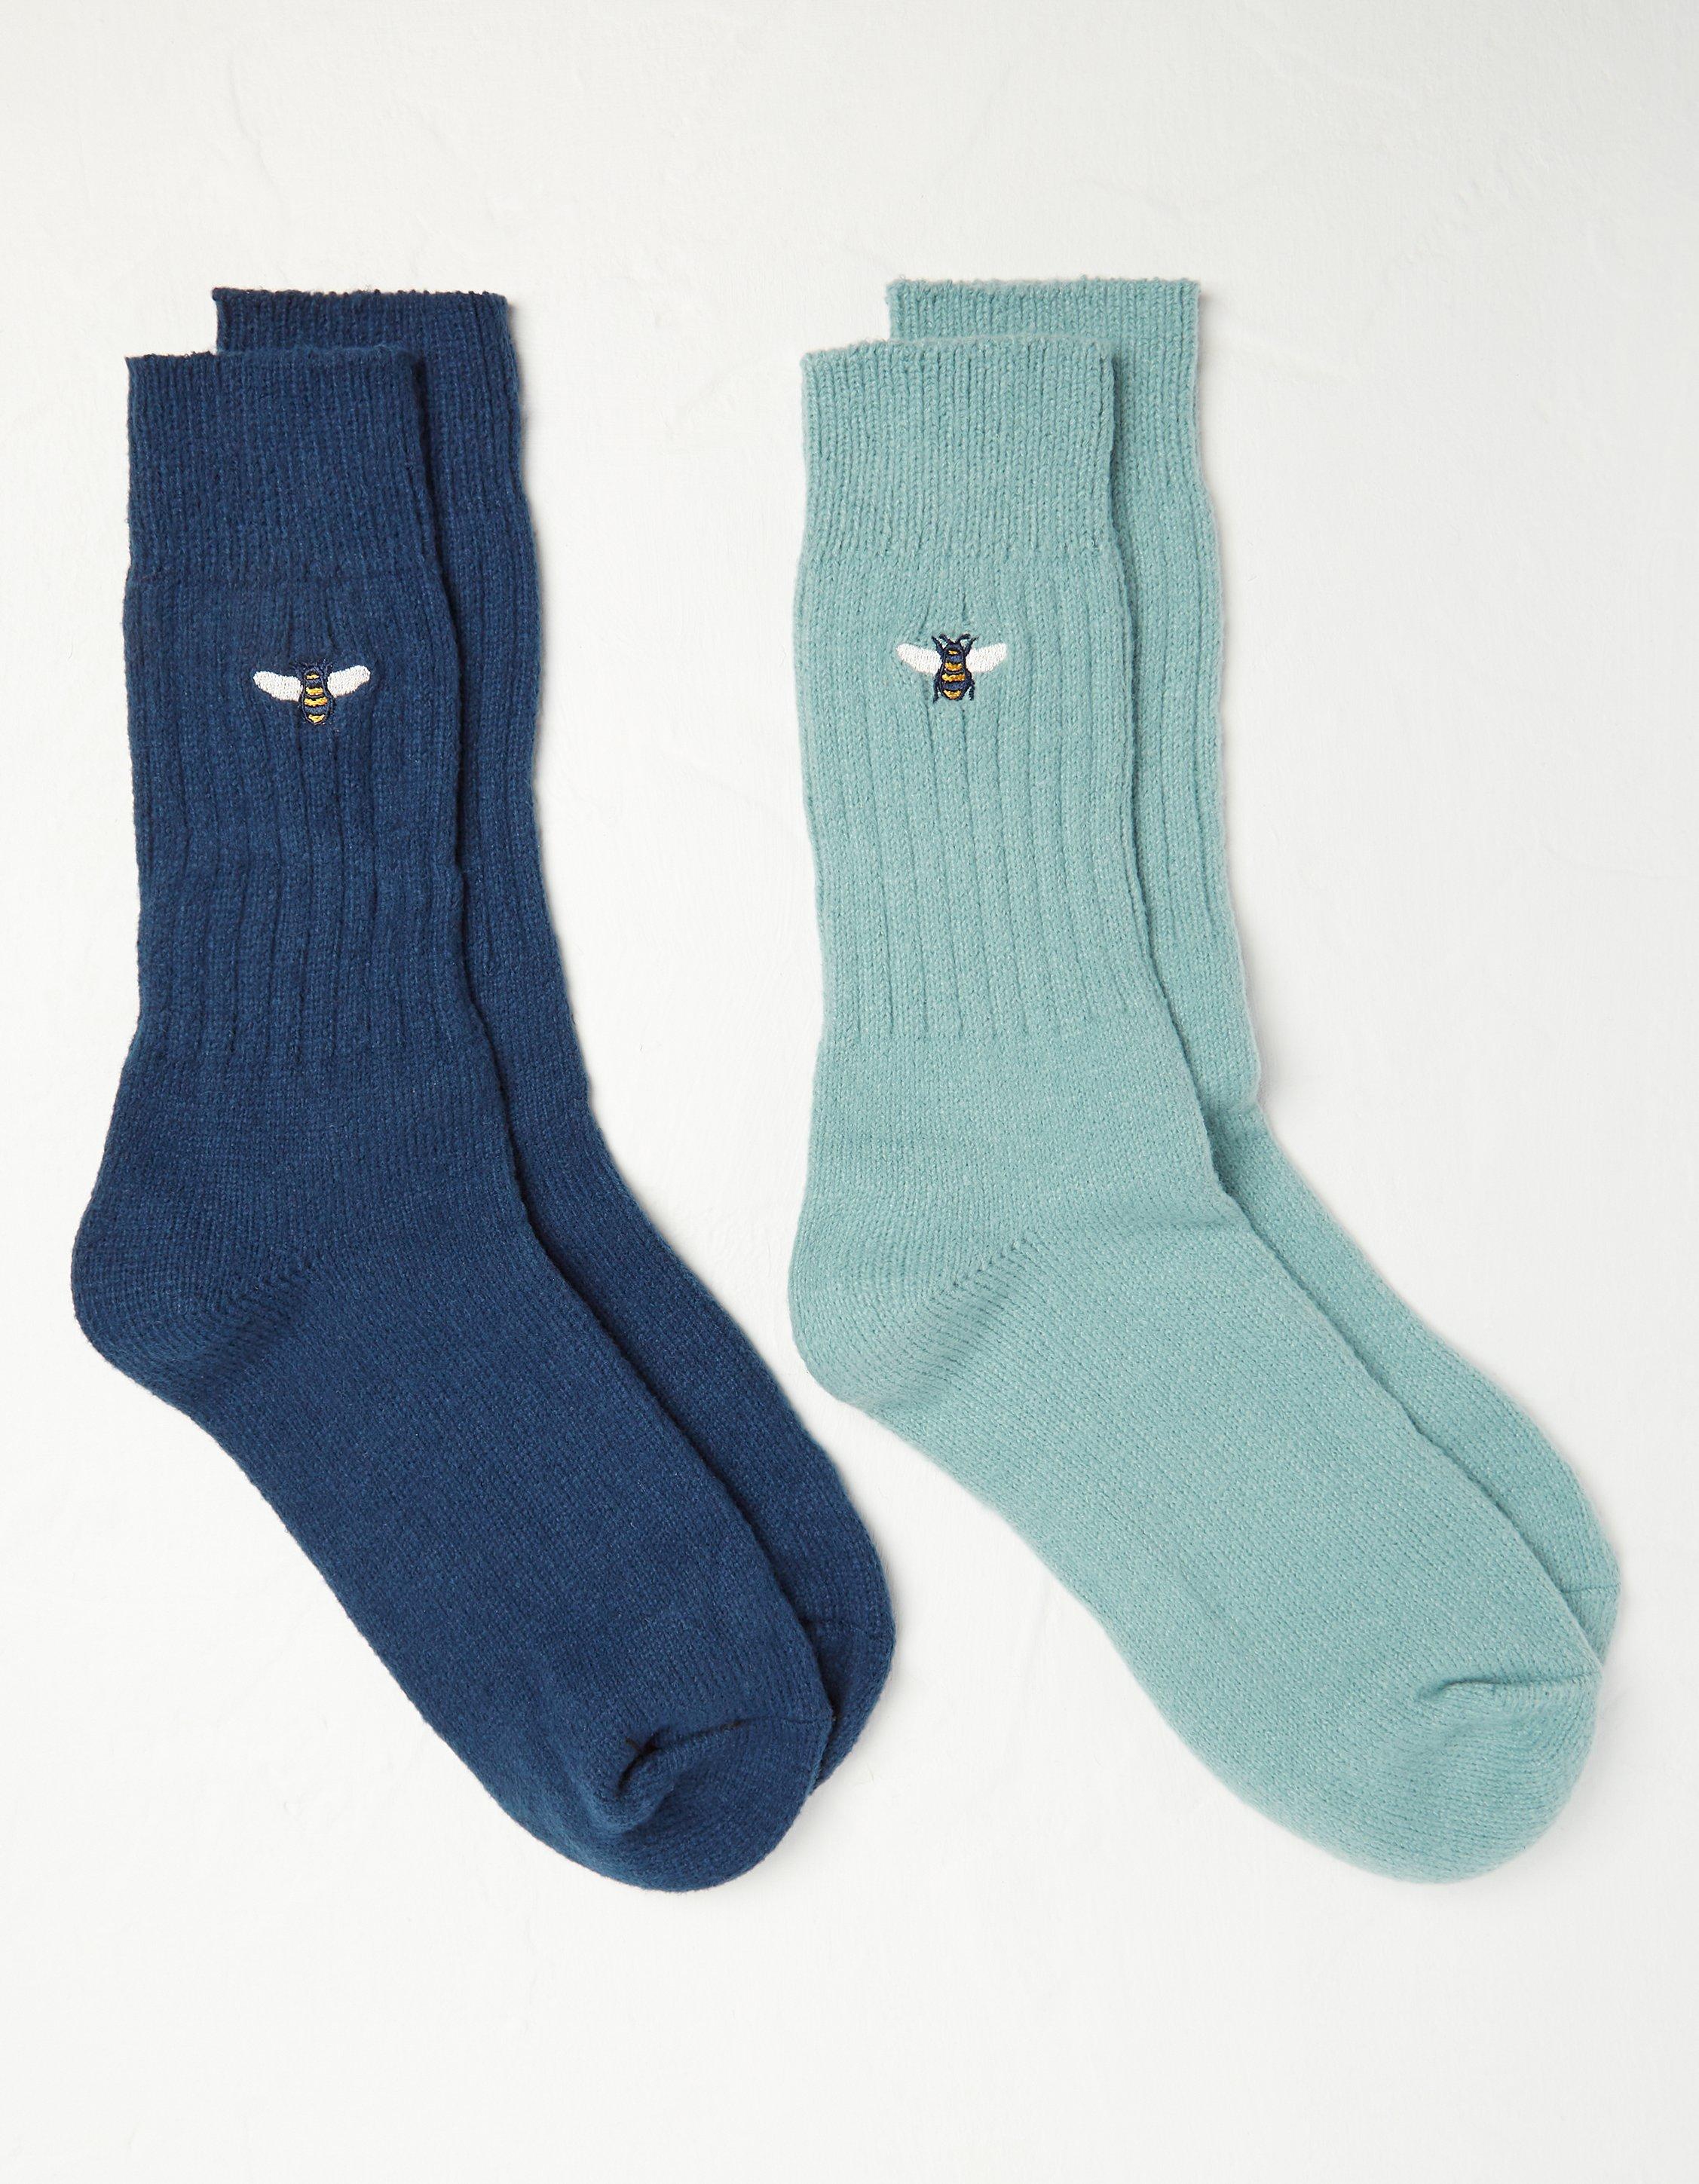 Monogrammed Men’s Dress Socks